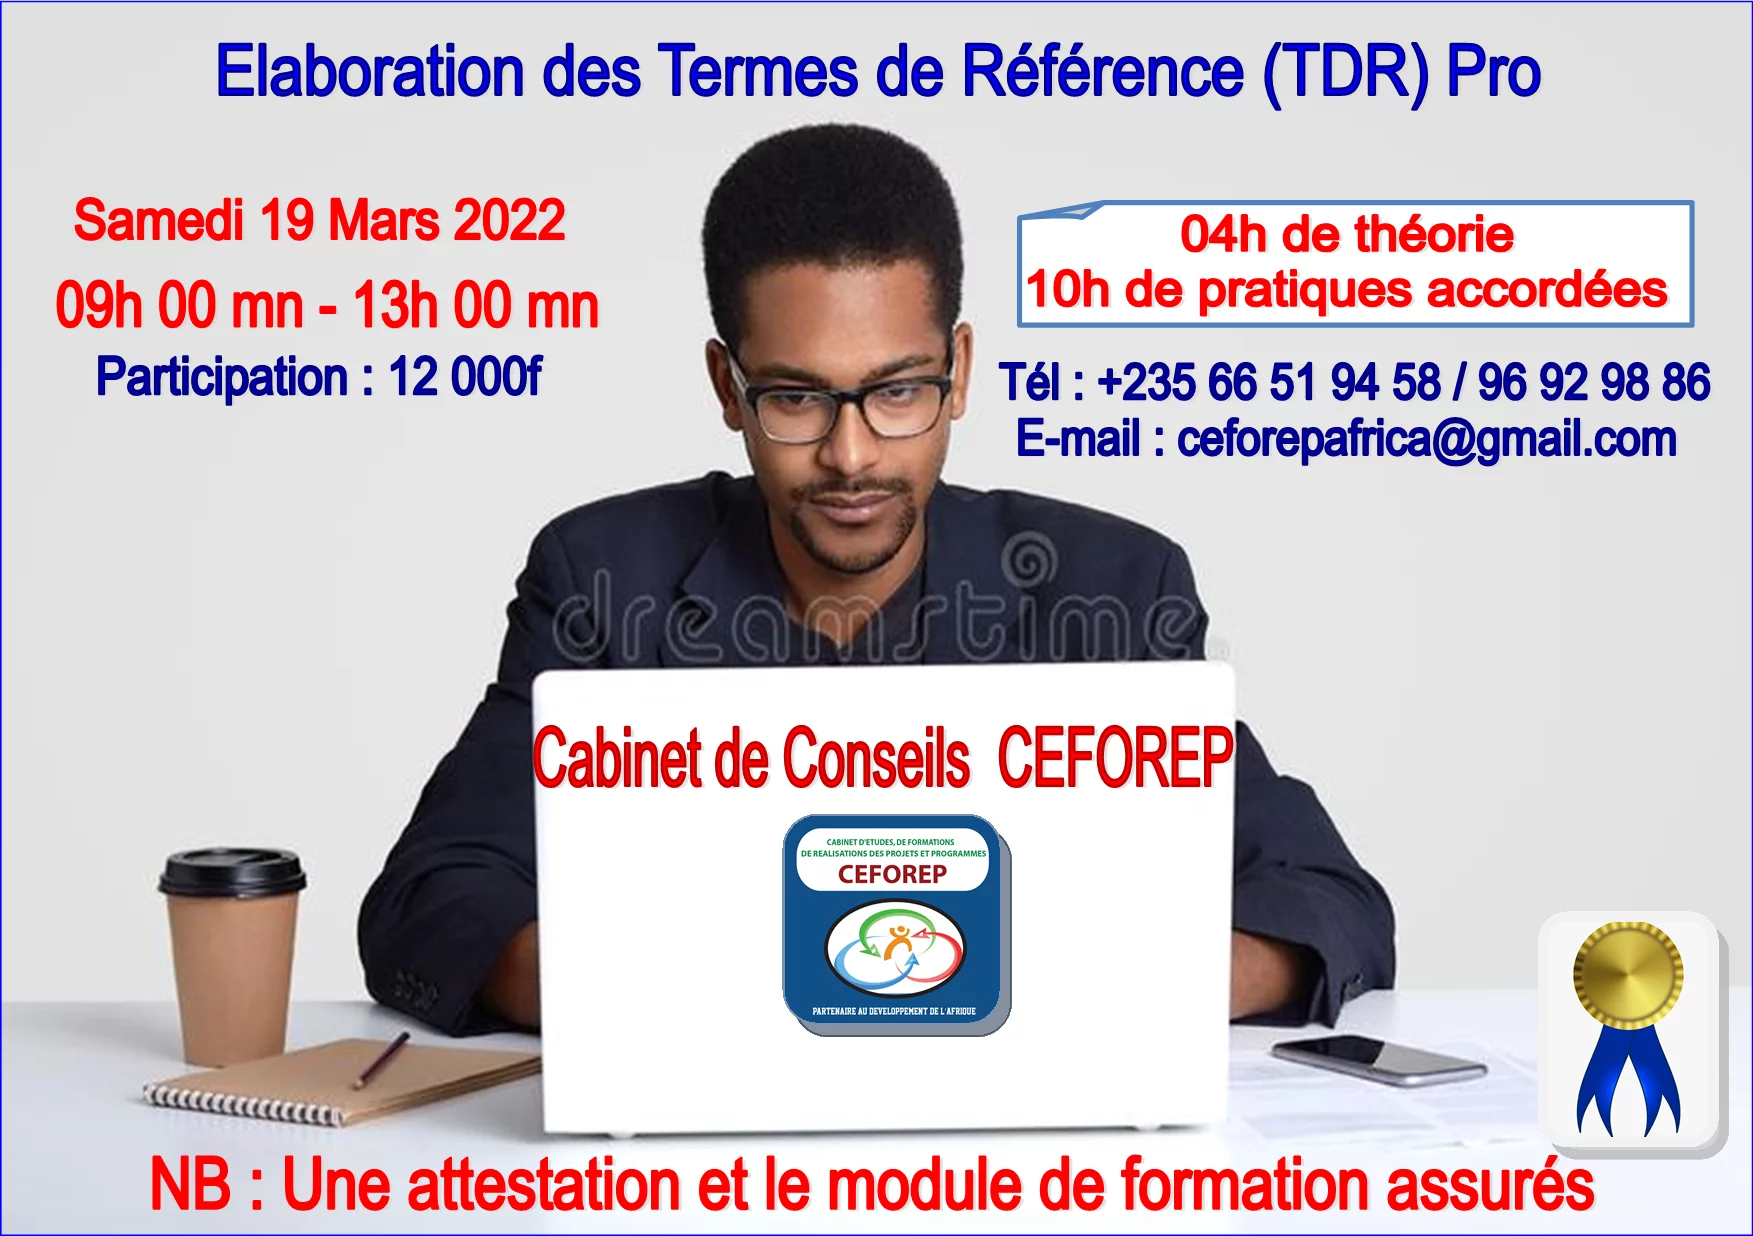 Le Cabinet de Conseils CEFOREP lance une formation sur l’élaboration des Termes de Référence (TDR) Pro 